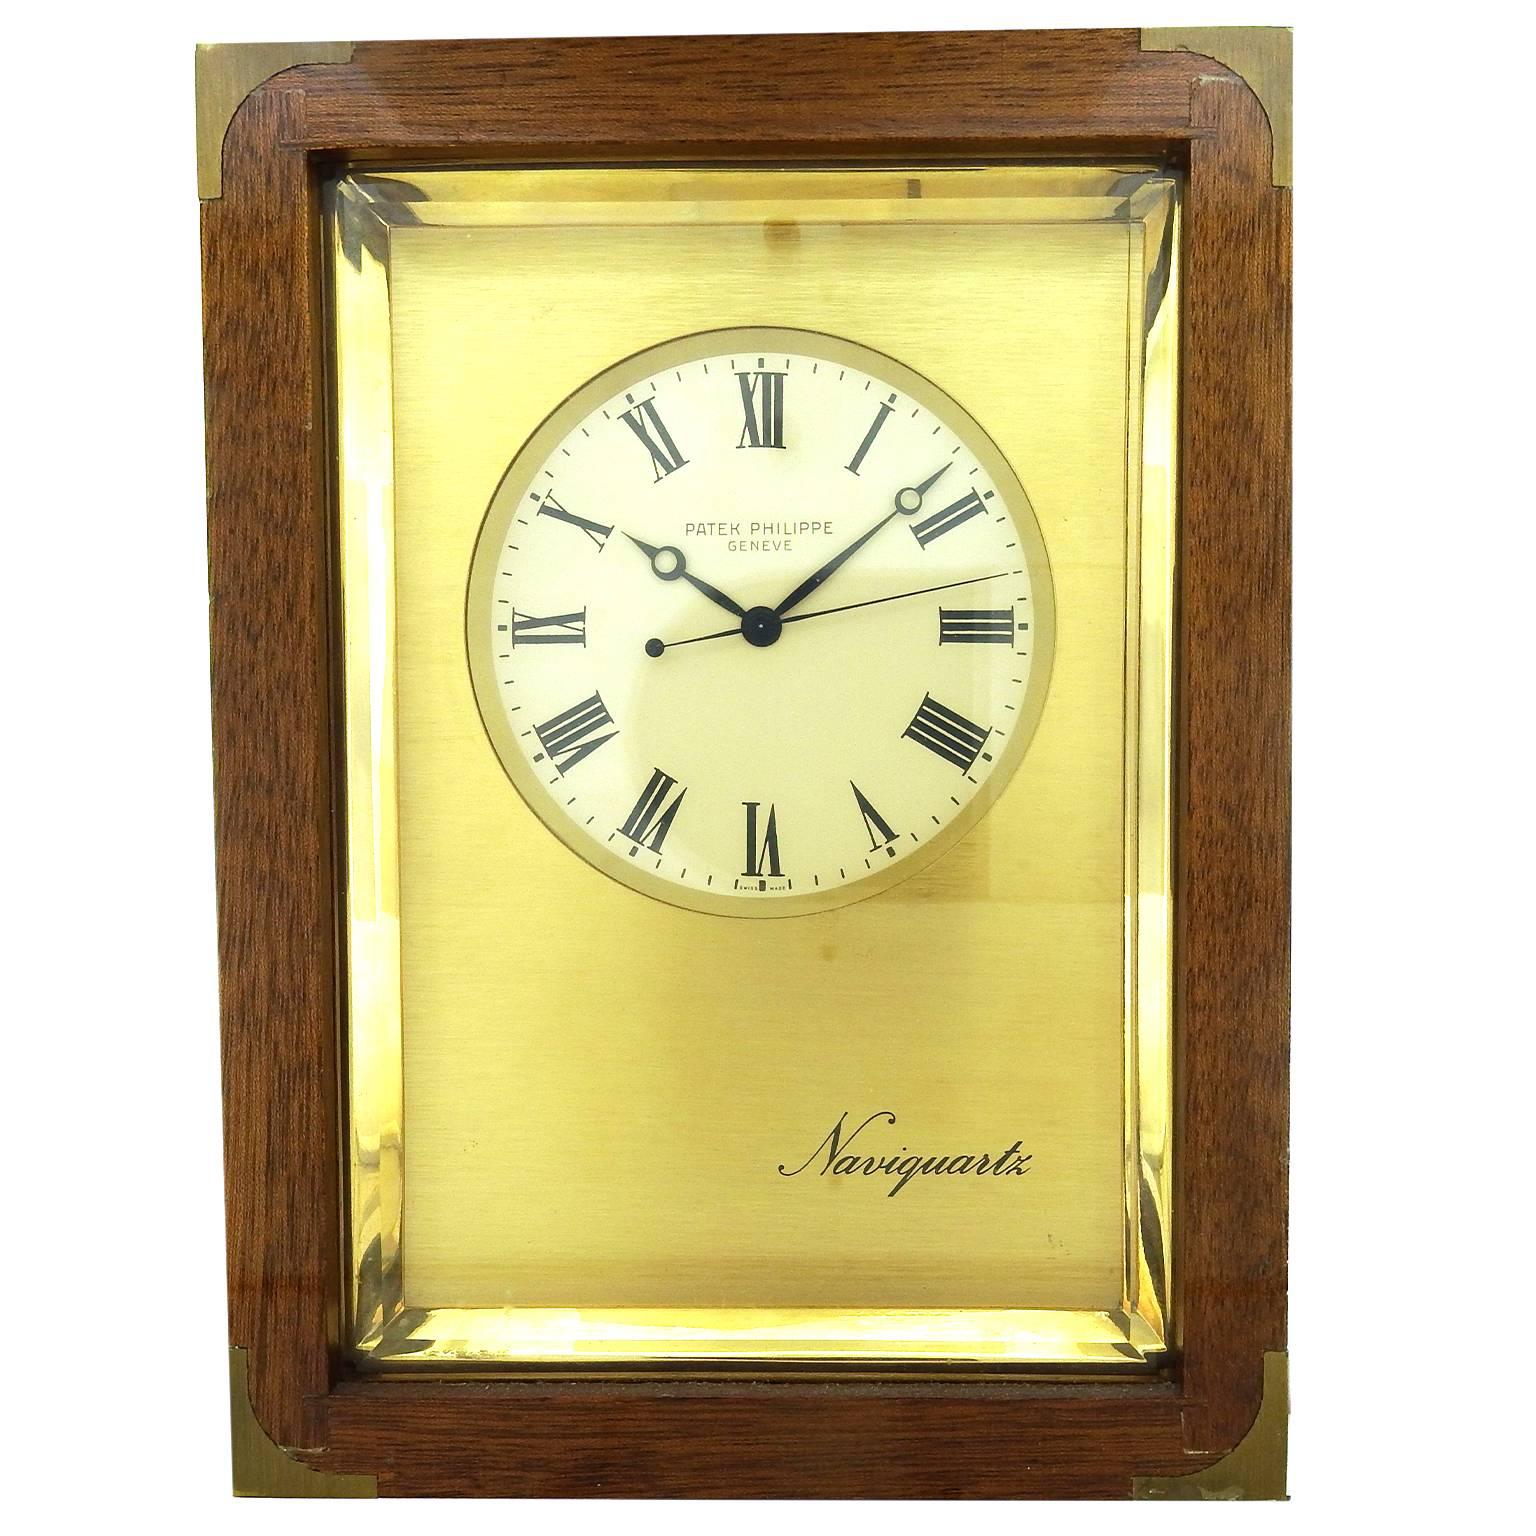 Patek Philippe Naviquartz Chronometer Clock